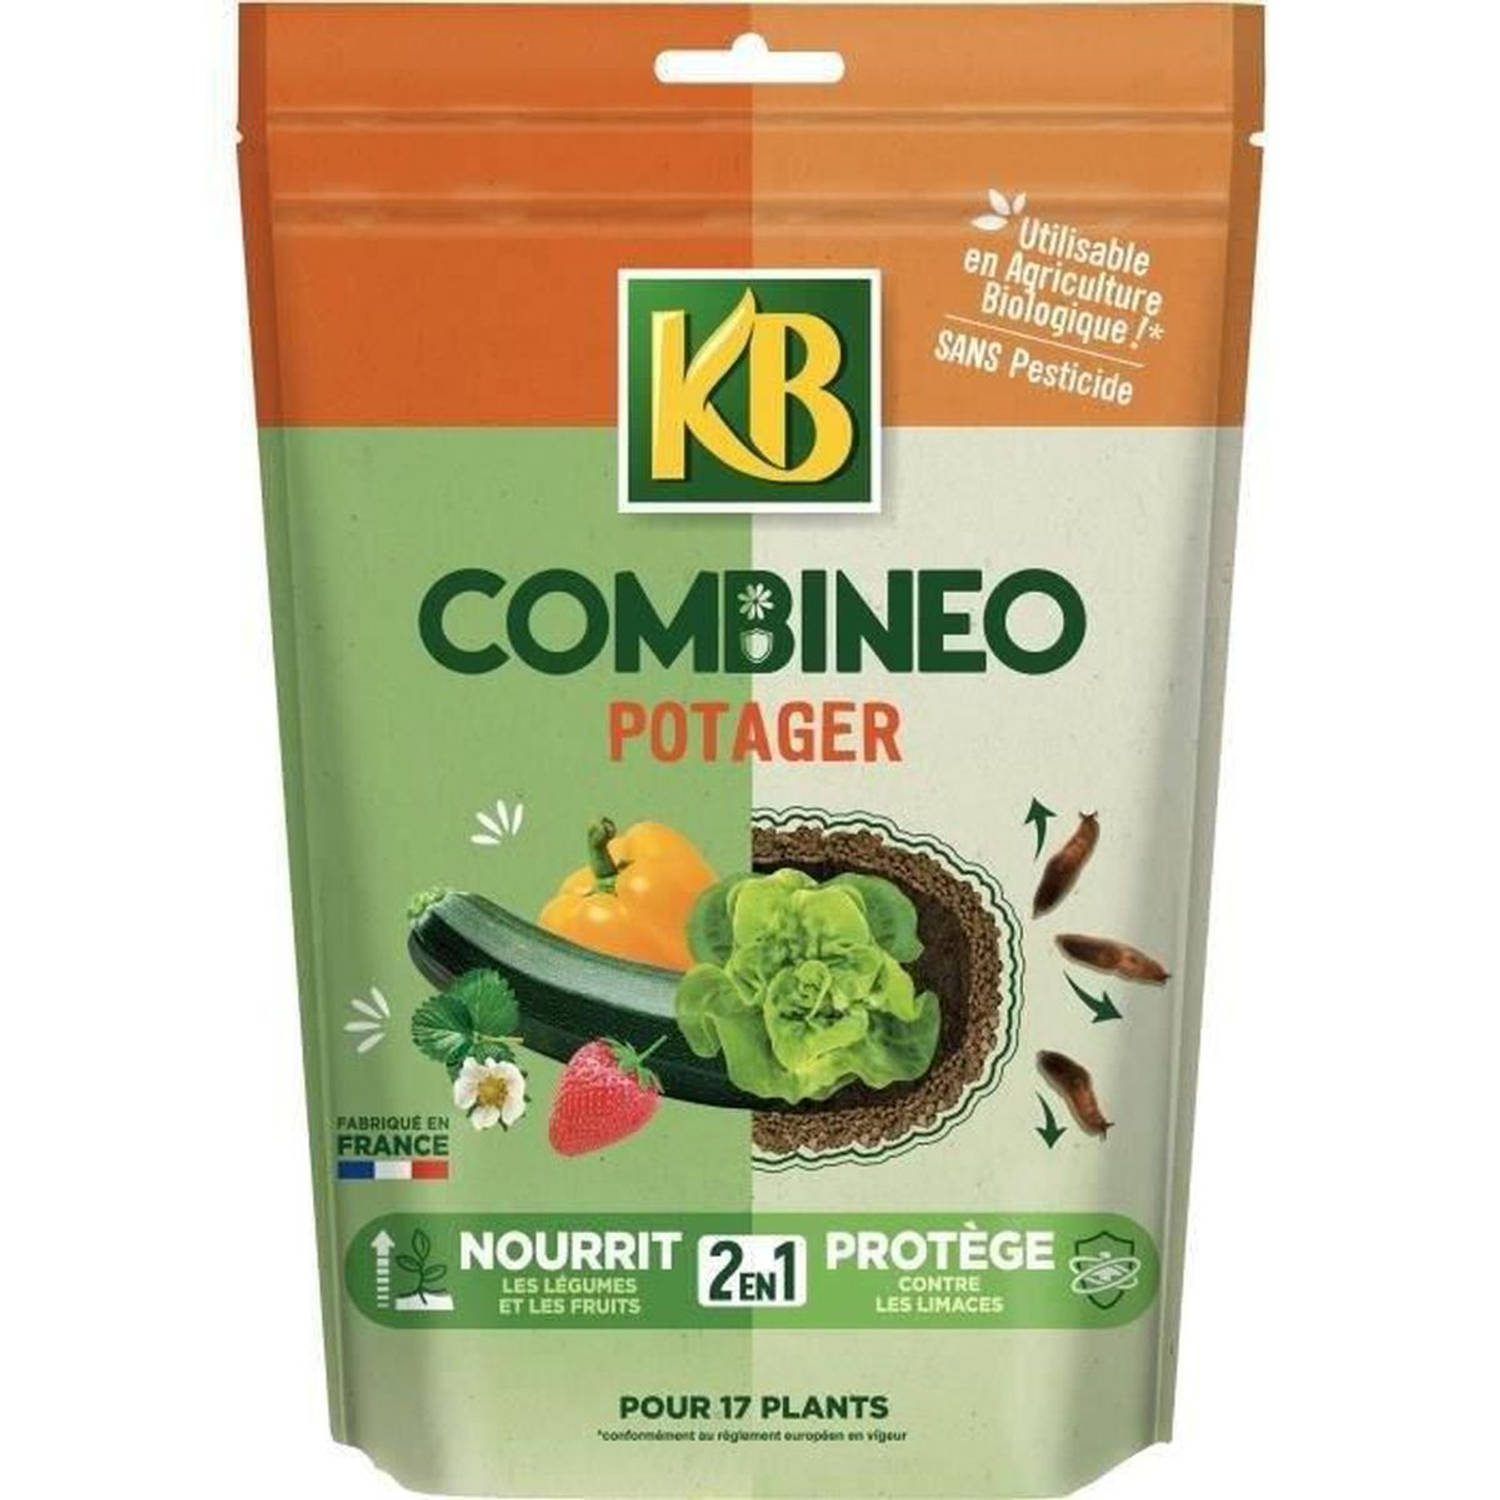 KB - Combinéo voedt en beschermt moestuin 700g